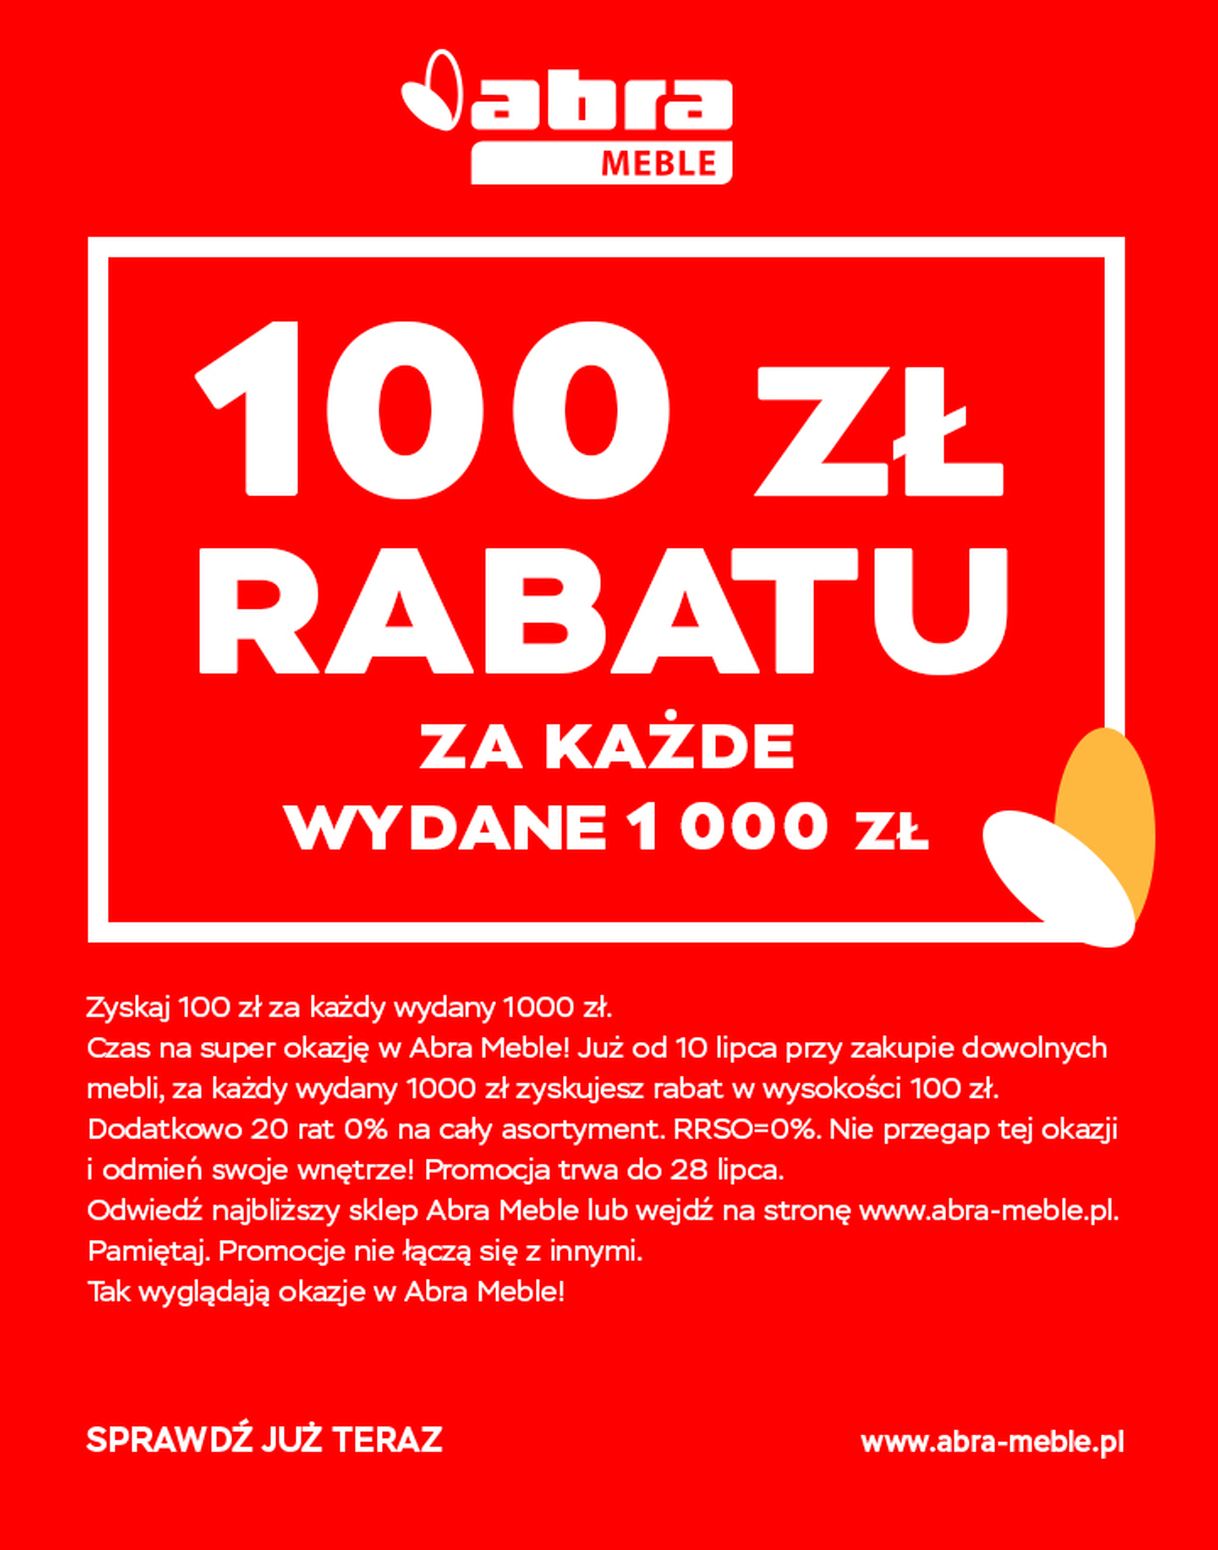 gazetka promocyjna abra meble 100 zł rabatu za każde wydane 1000 zł - Strona 1